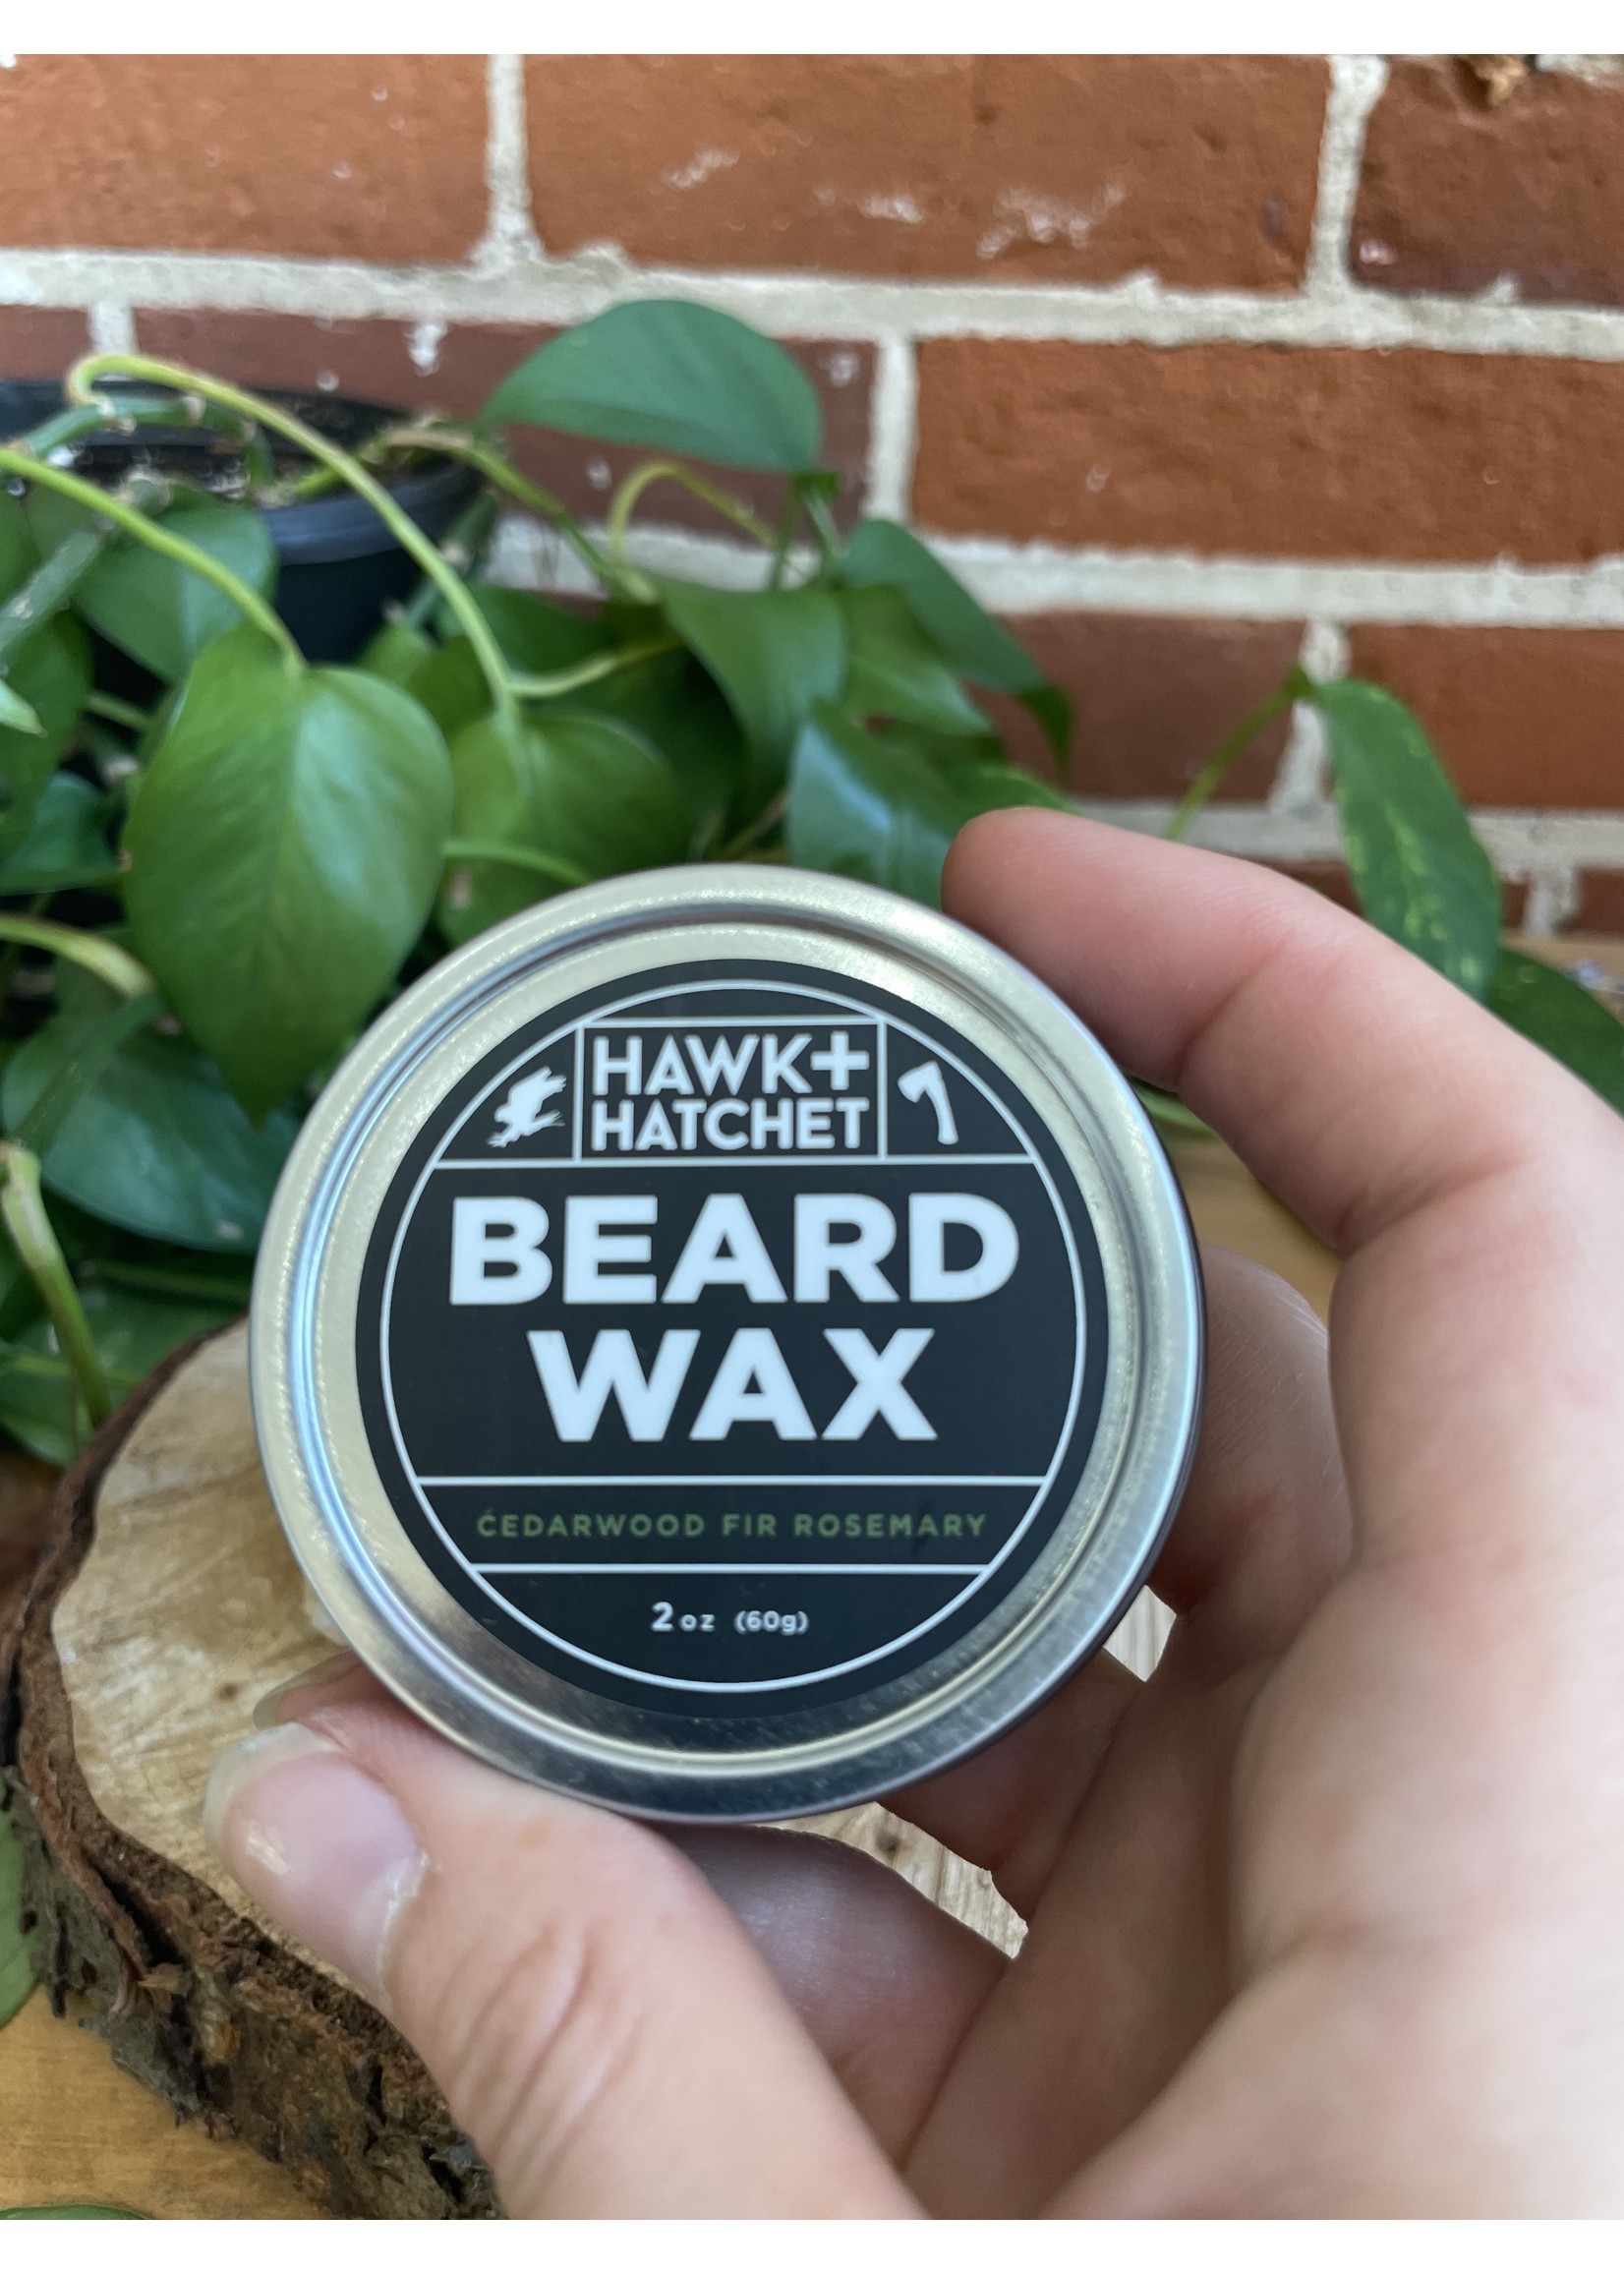 Hawk + Hatchet: Beard Wax